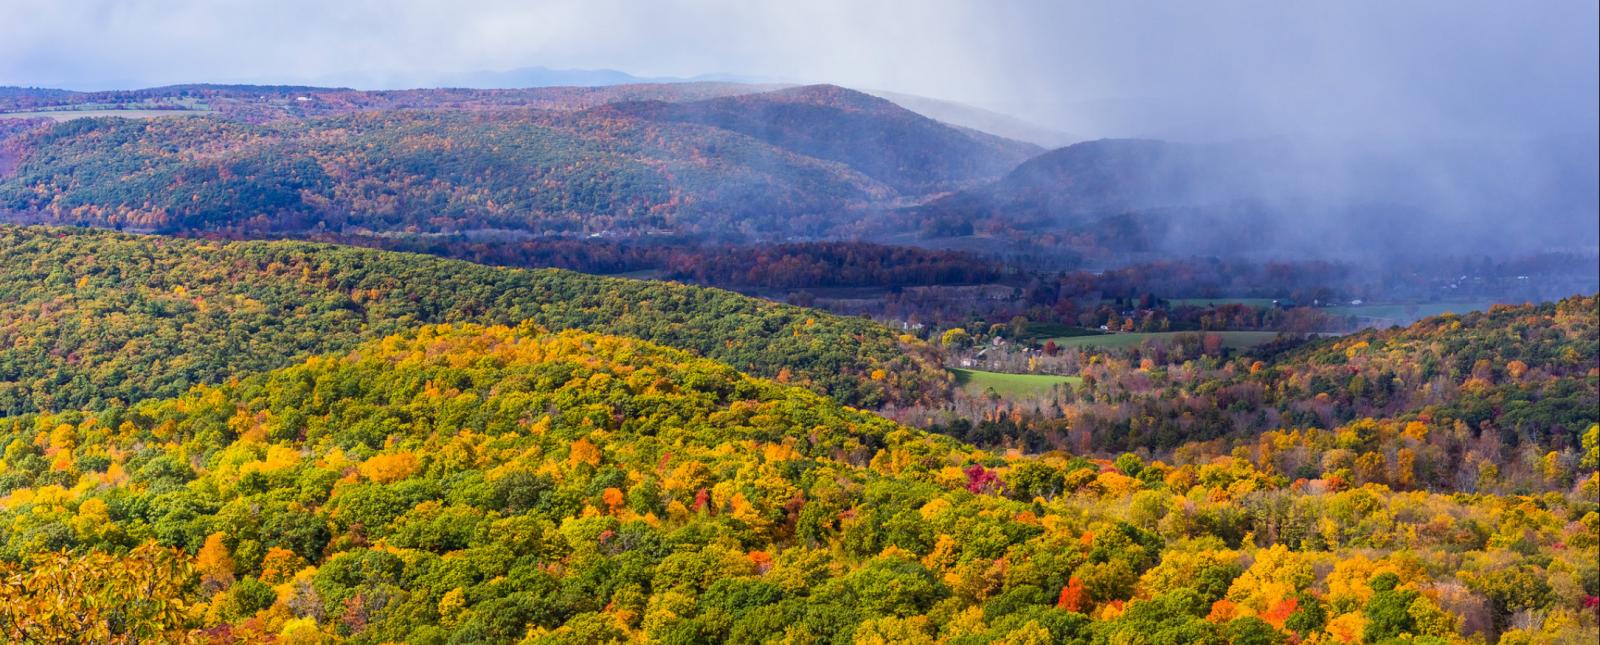 Una hermosa vista de colinas, montañas y follaje de otoño (Flickr@PW_Photography)